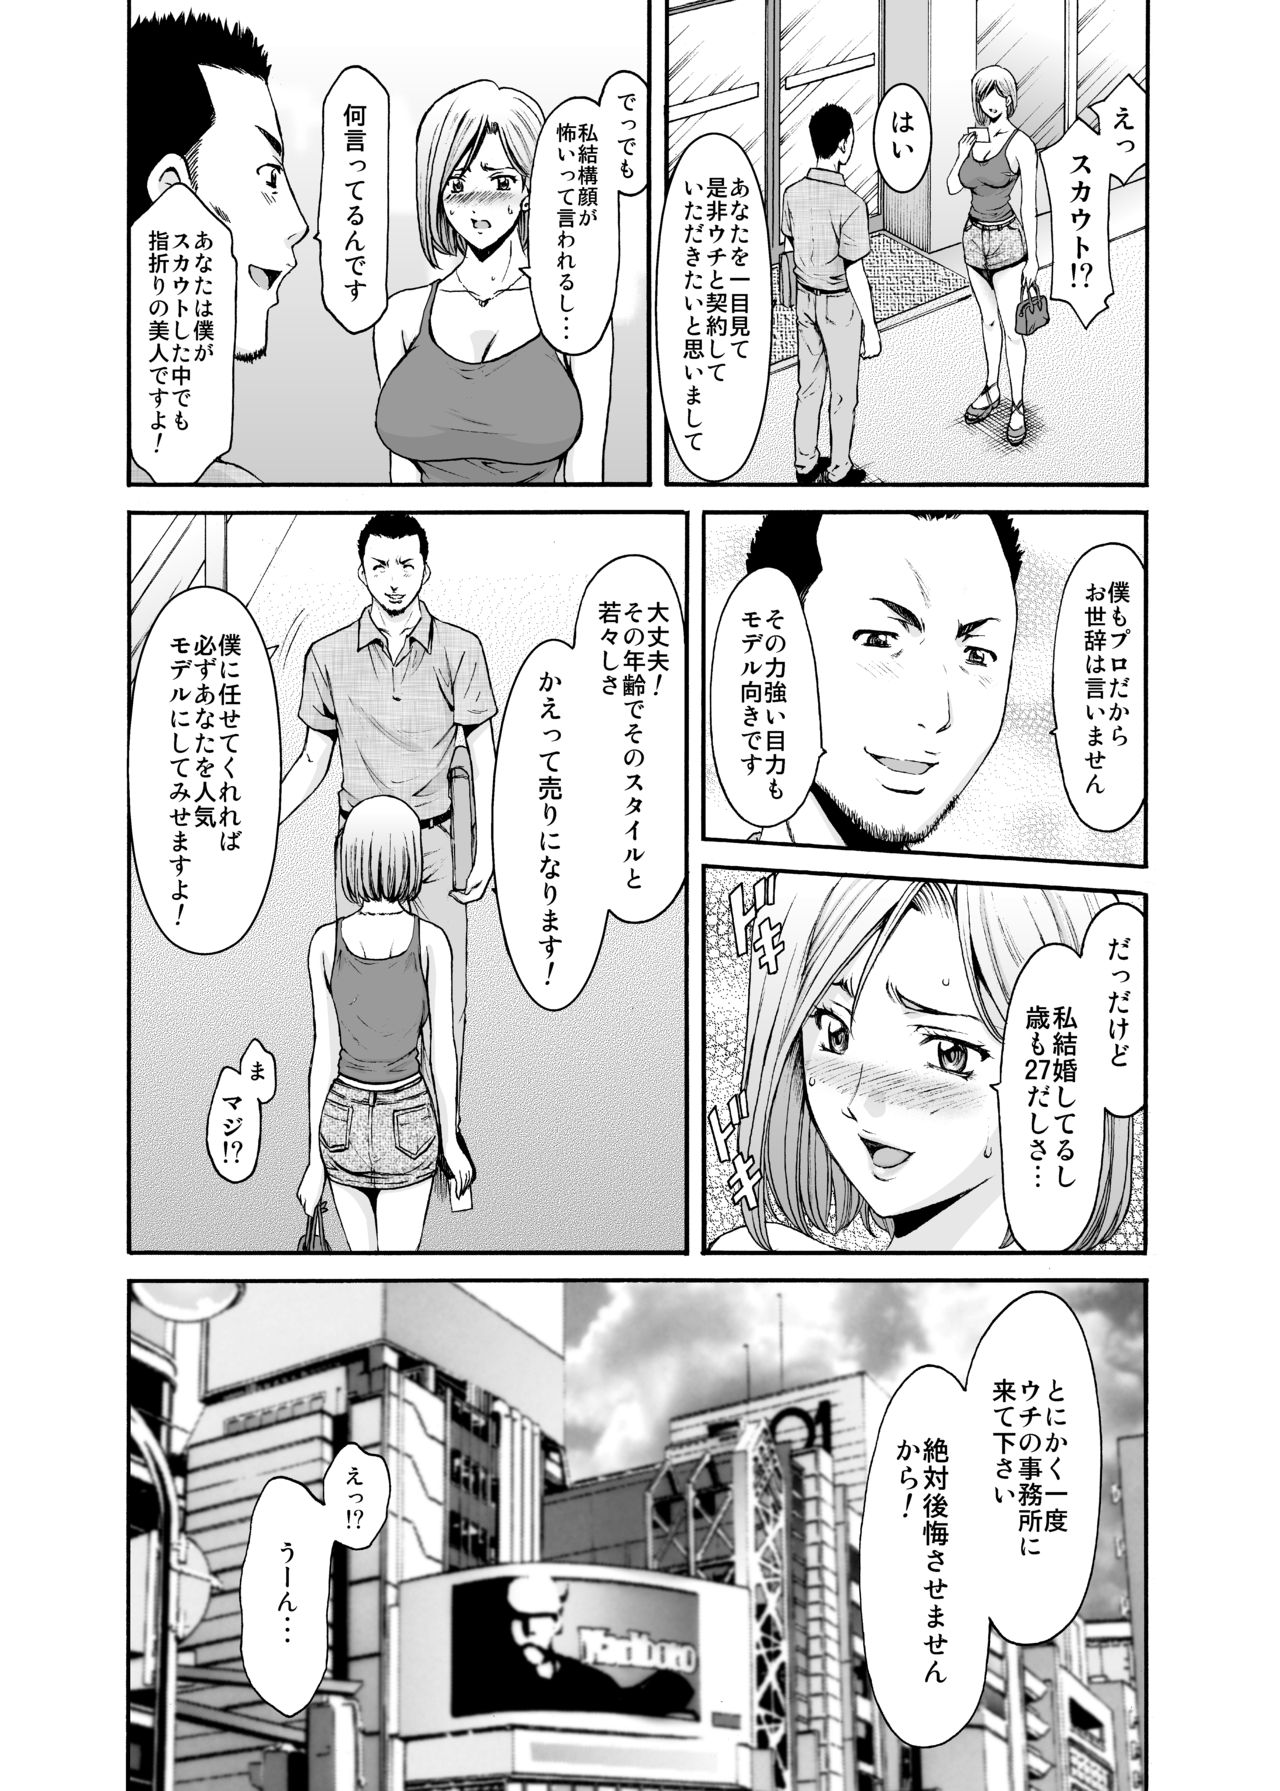 [Hoshino Ryuichi] Motoyan Zuma ga Ochiru made page 9 full